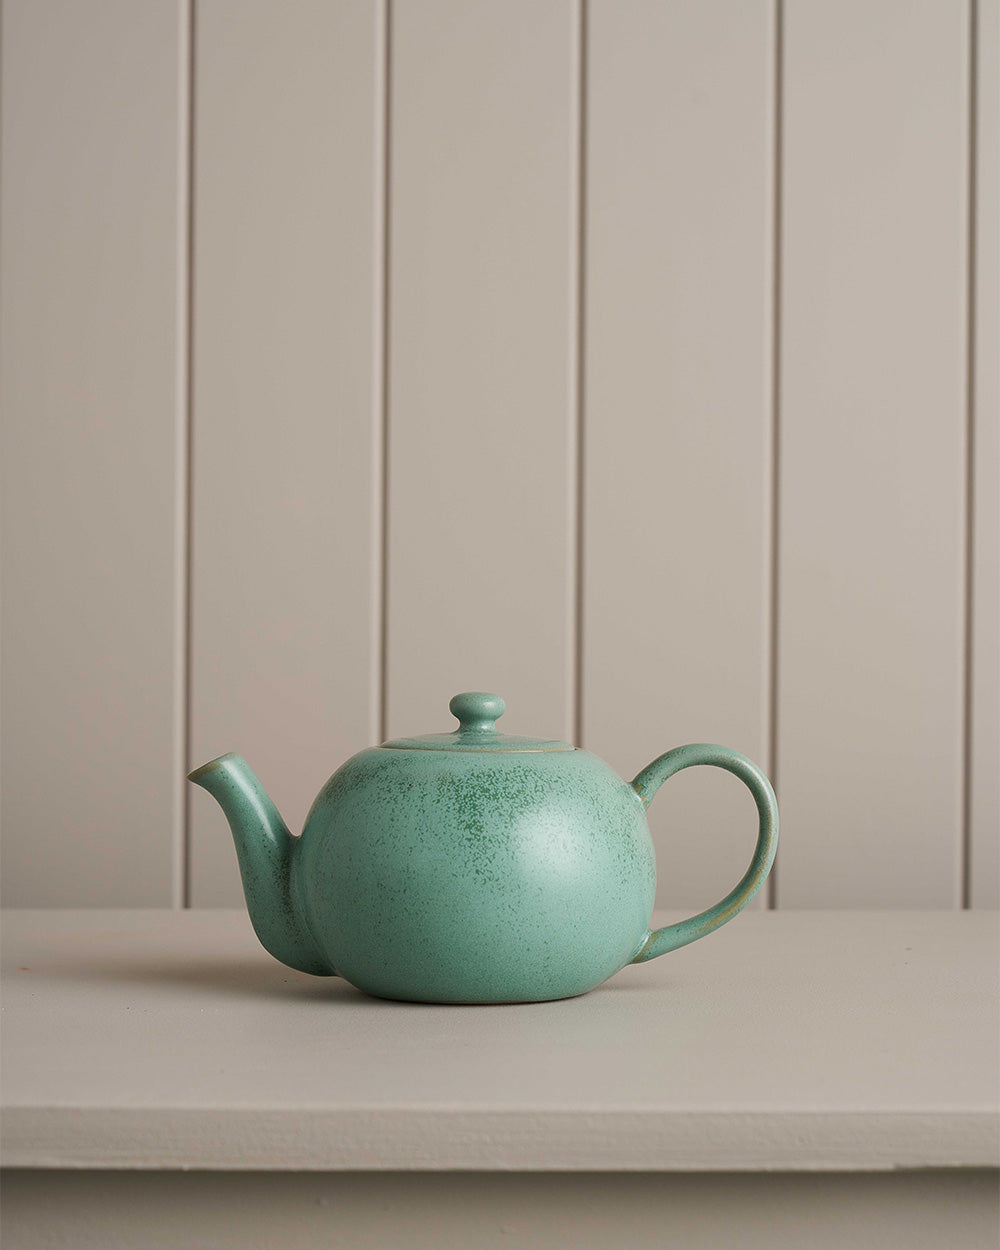 Teapot / Breakfast In Bed Moss